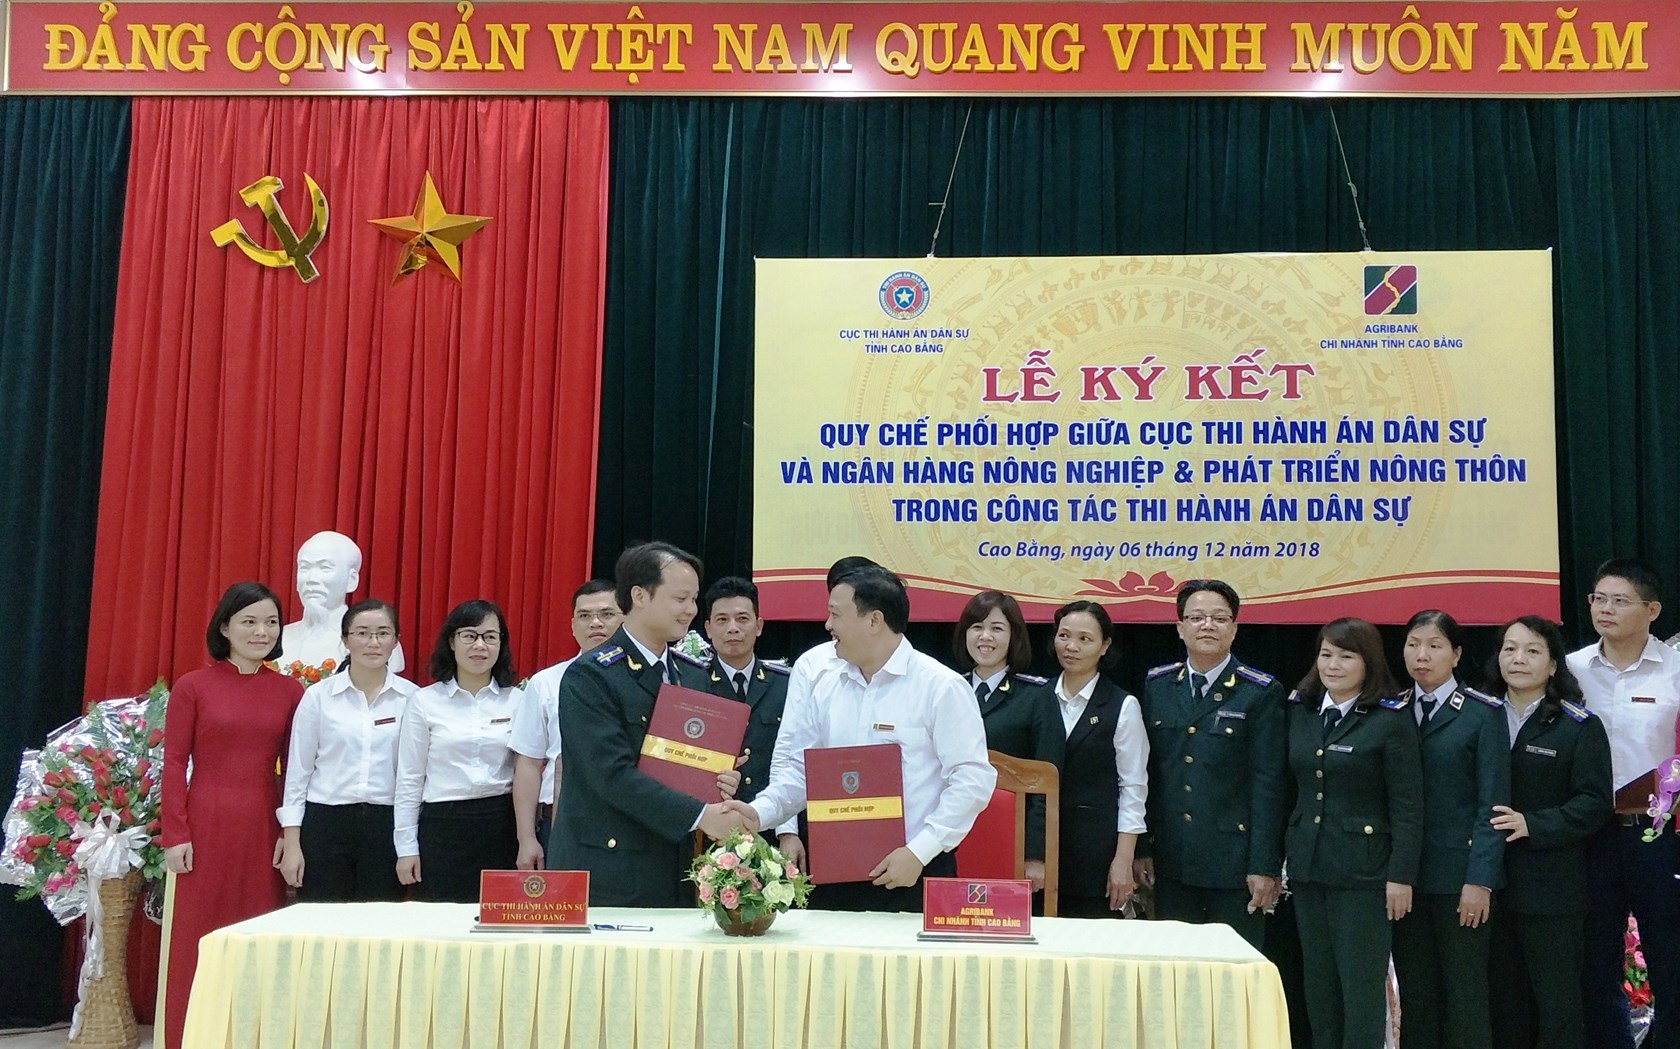 Cục Thi hành án dân sự và Ngân hàng Nông nghiệp và phát triển nông thôn Việt Nam chi nhánh tỉnh ký kết Quy chế phối hợp trong công tác thi hành án dân sự